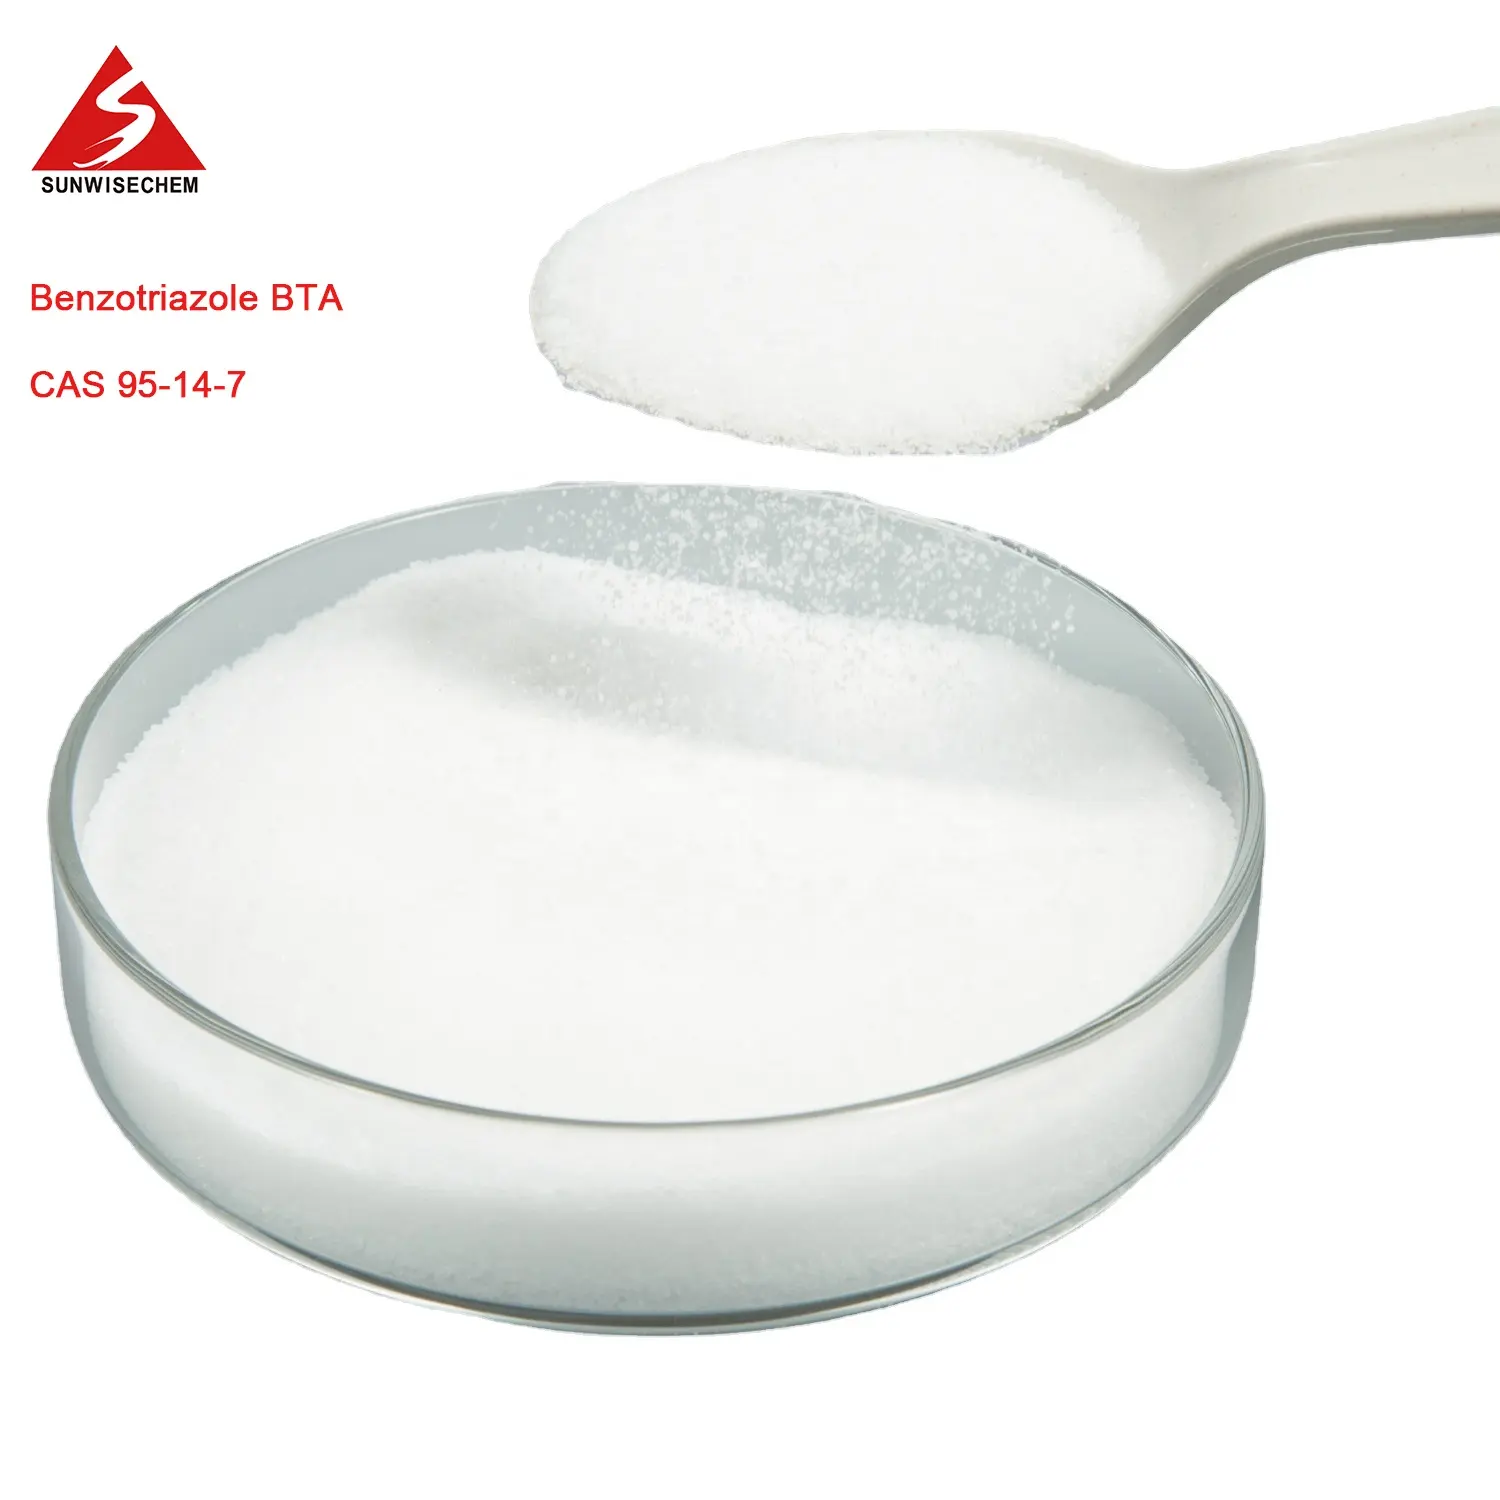 Weißes Granulat pulver Benzo triazol BTA zur Wasser aufbereitung CAS 95-14-7